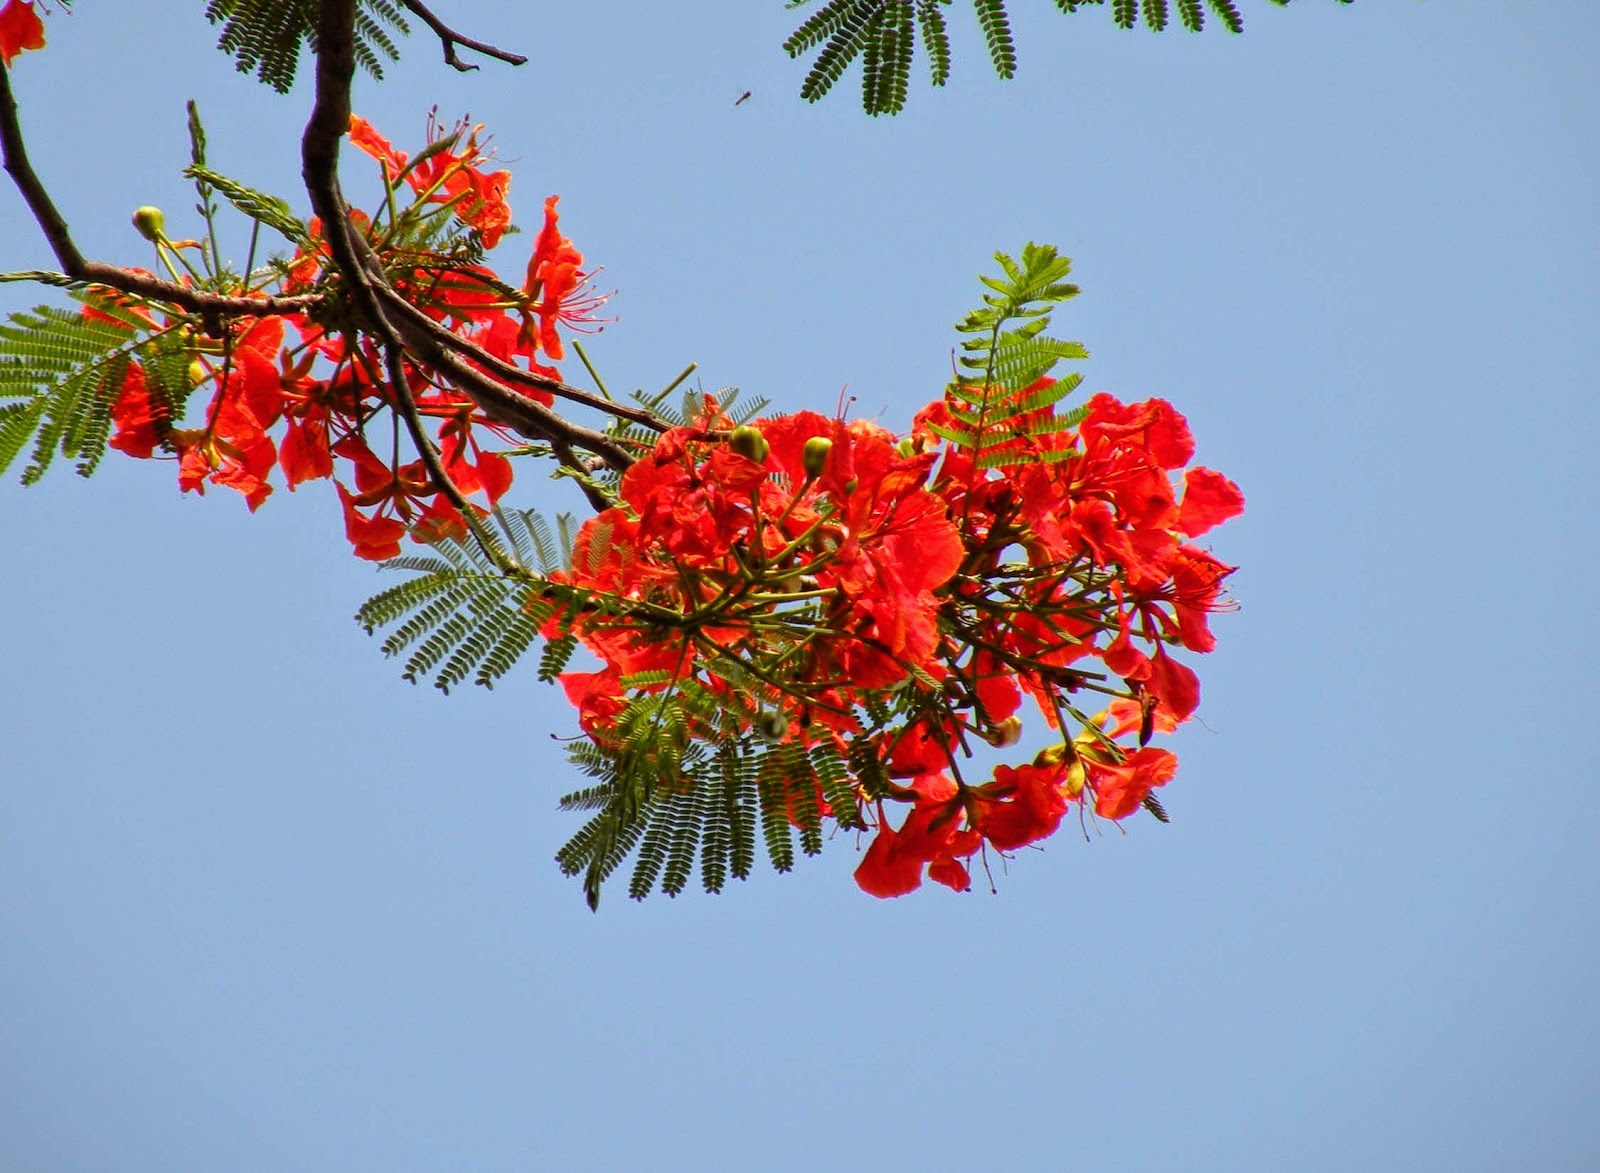 Hình cây Phượng rực rỡ màu đỏ khi hè về - ảnh 3